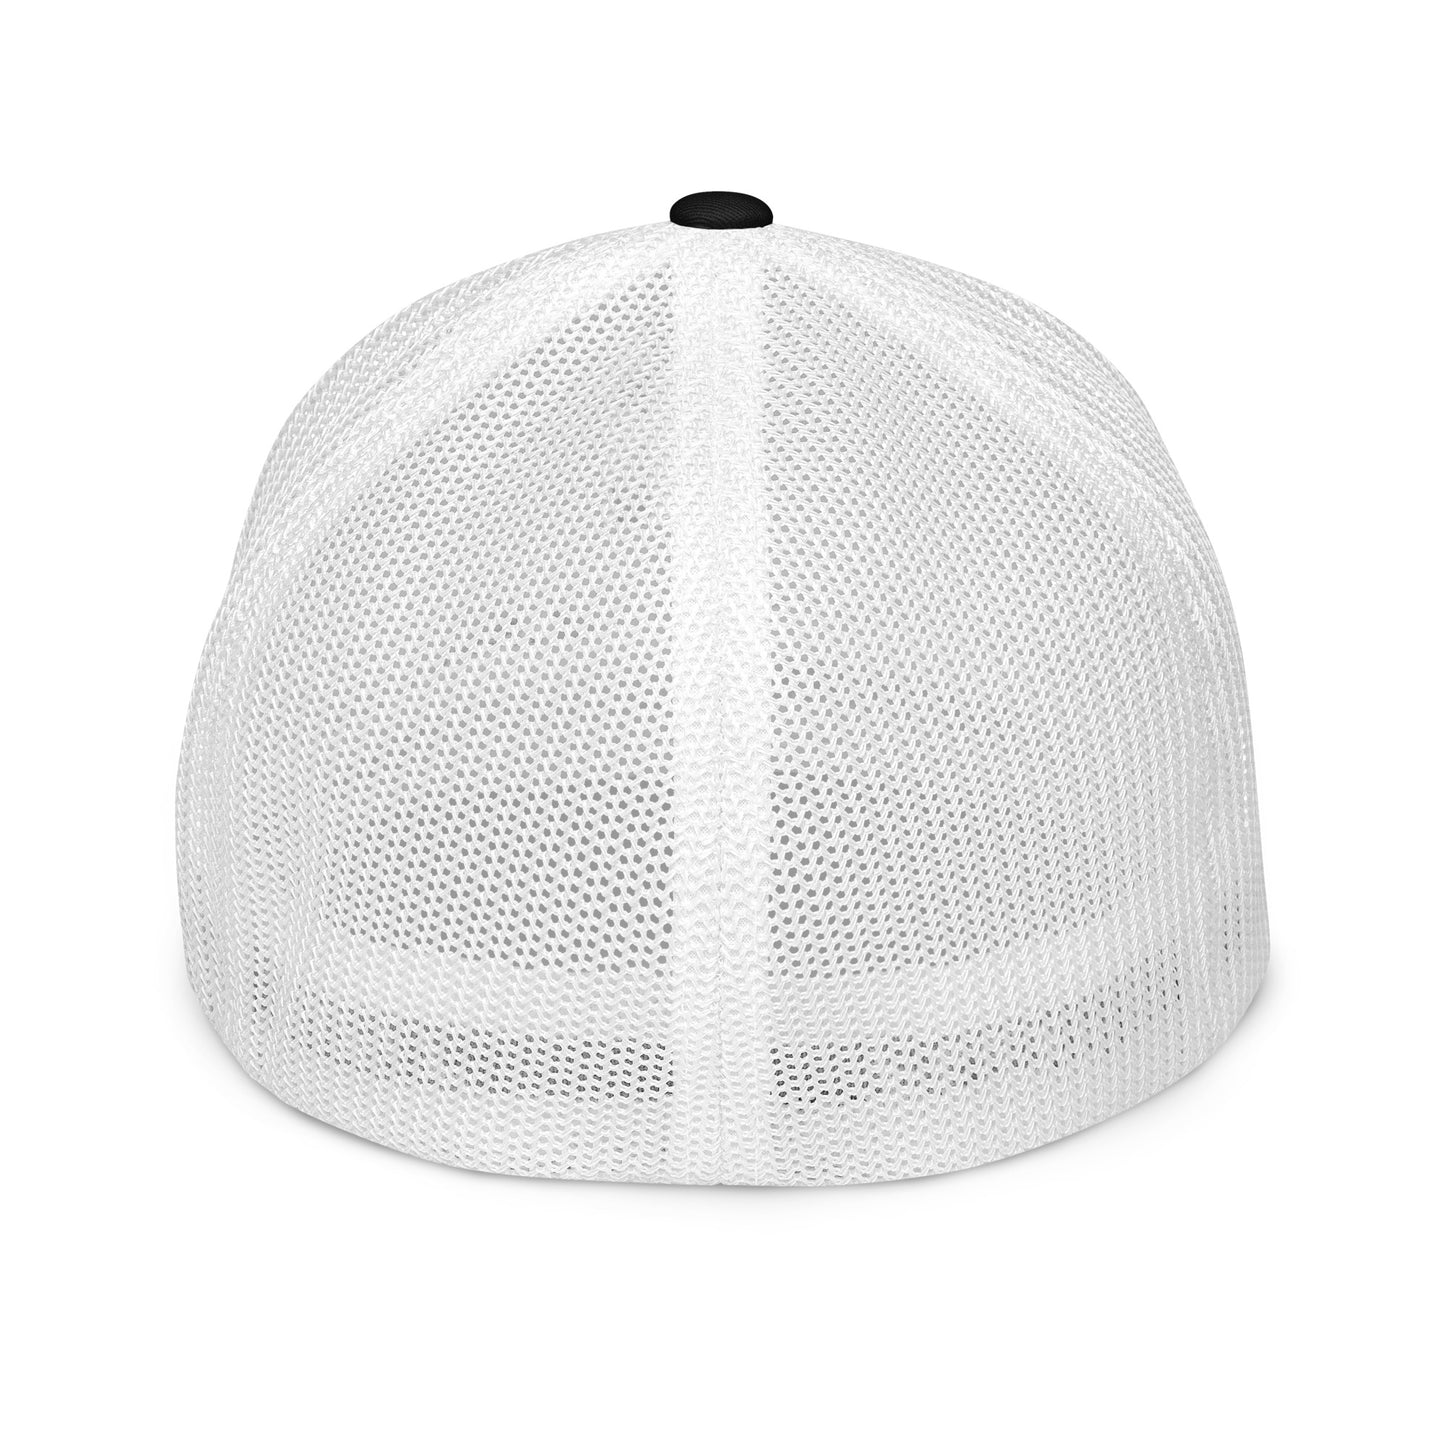 Premium Fitted mesh back cap